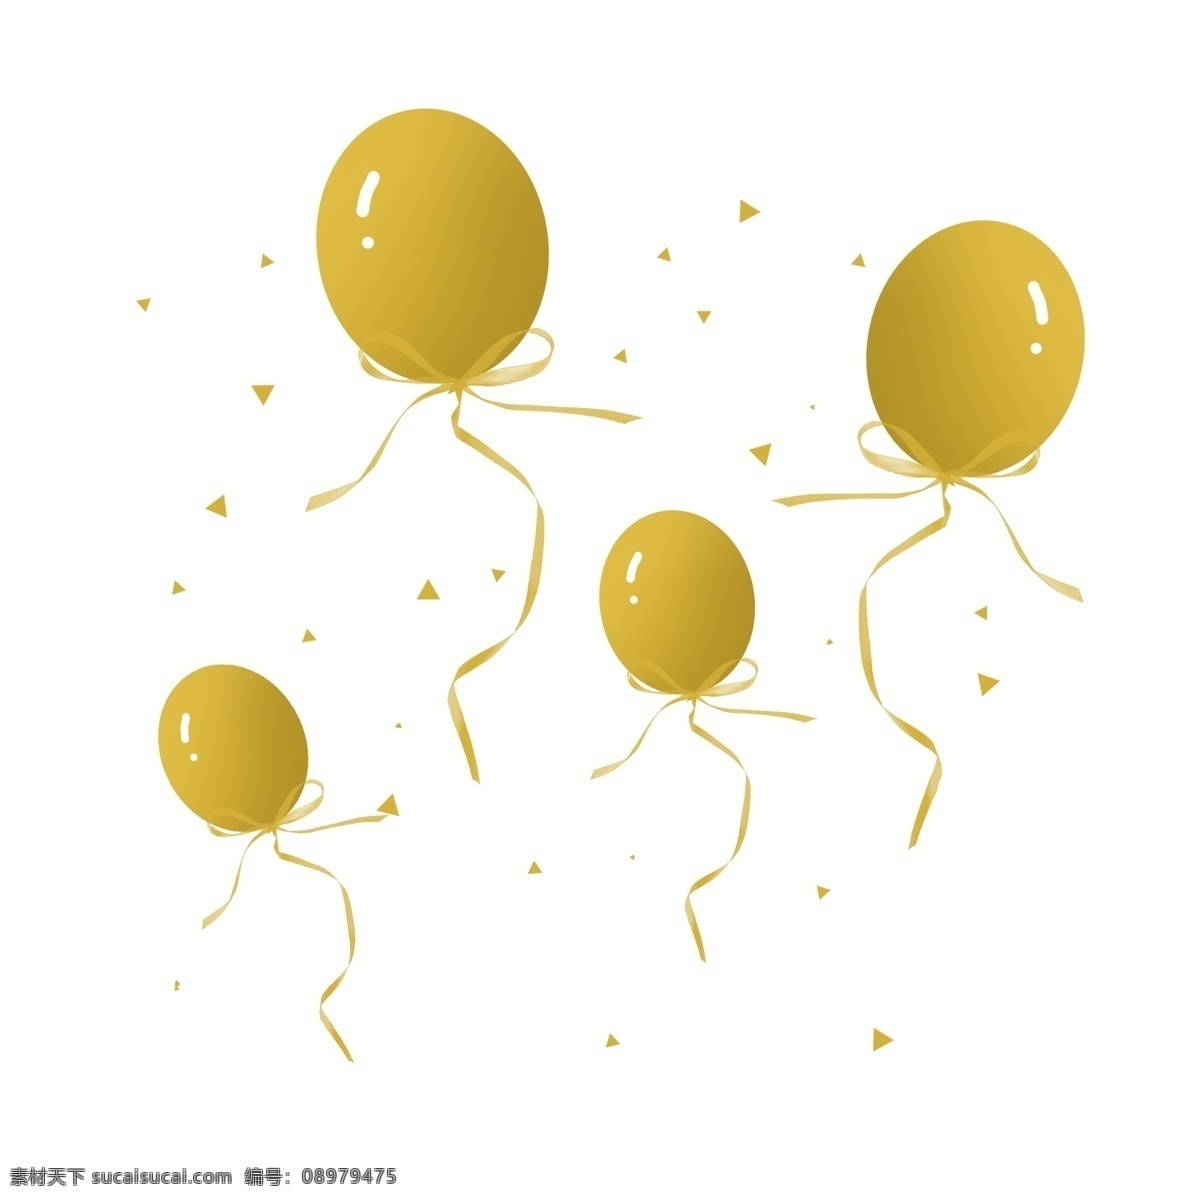 手绘 金色 气球 彩带 金色彩带 金色气球 金色丝带 丝带 装饰 节日装饰 促销 促销装饰 漂浮 漂浮彩带 漂浮气球